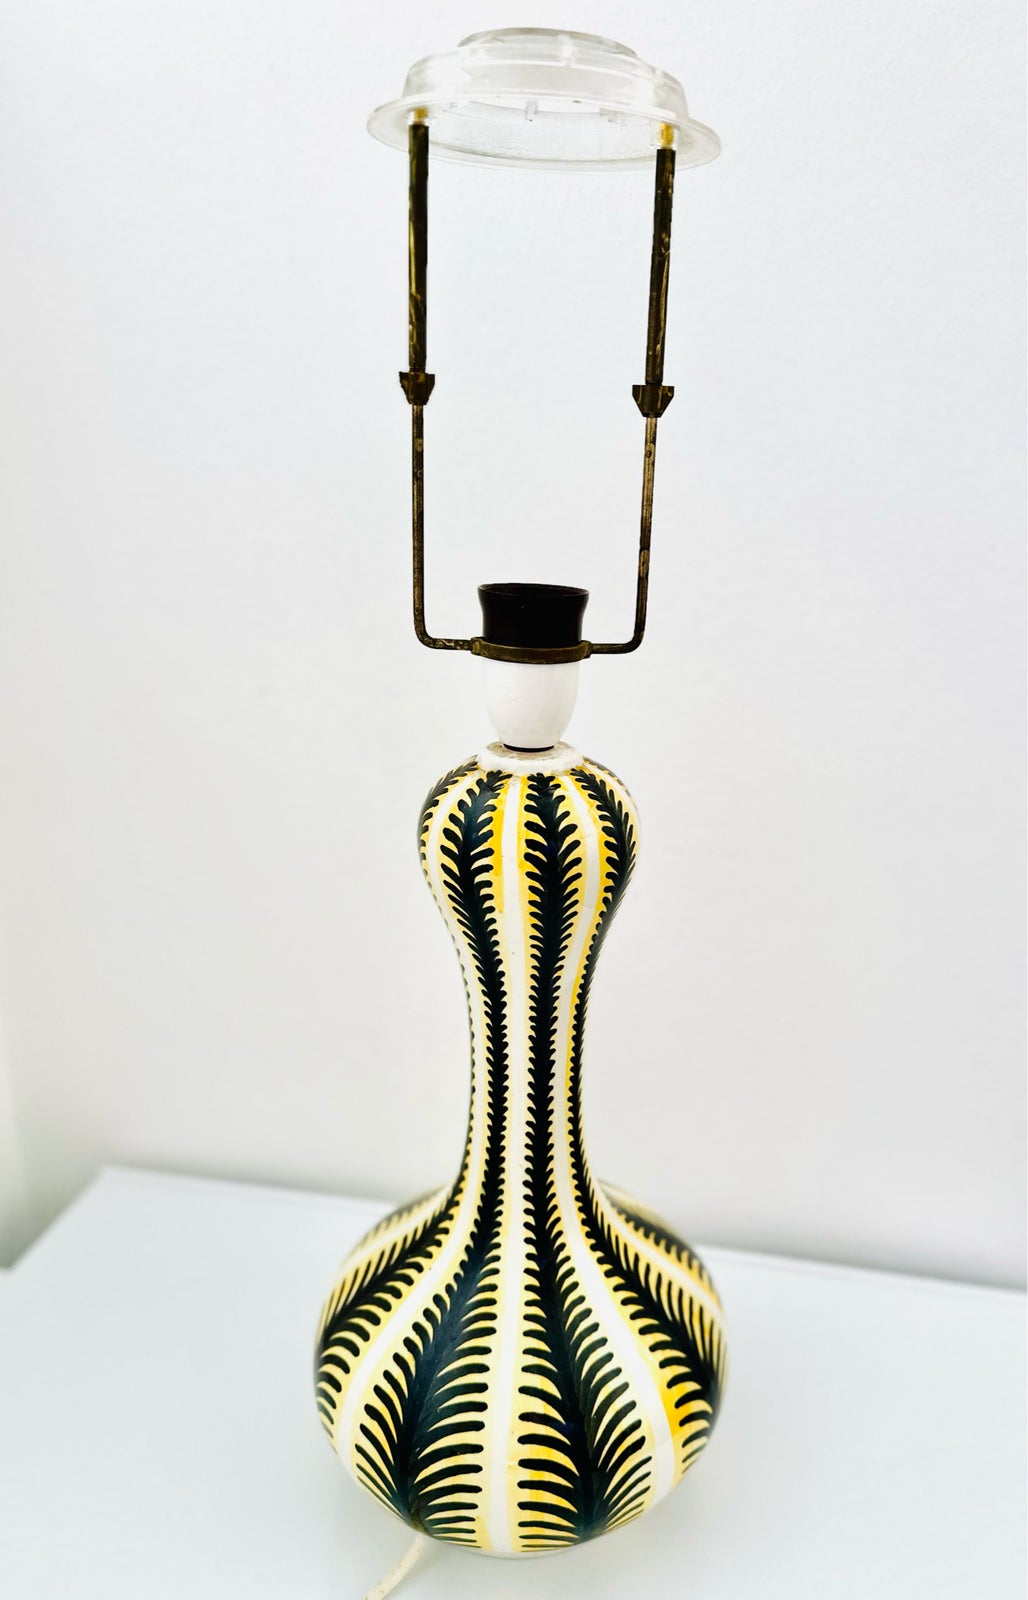 Kai Klinge keramik lampe, 53 år gl. h: 36